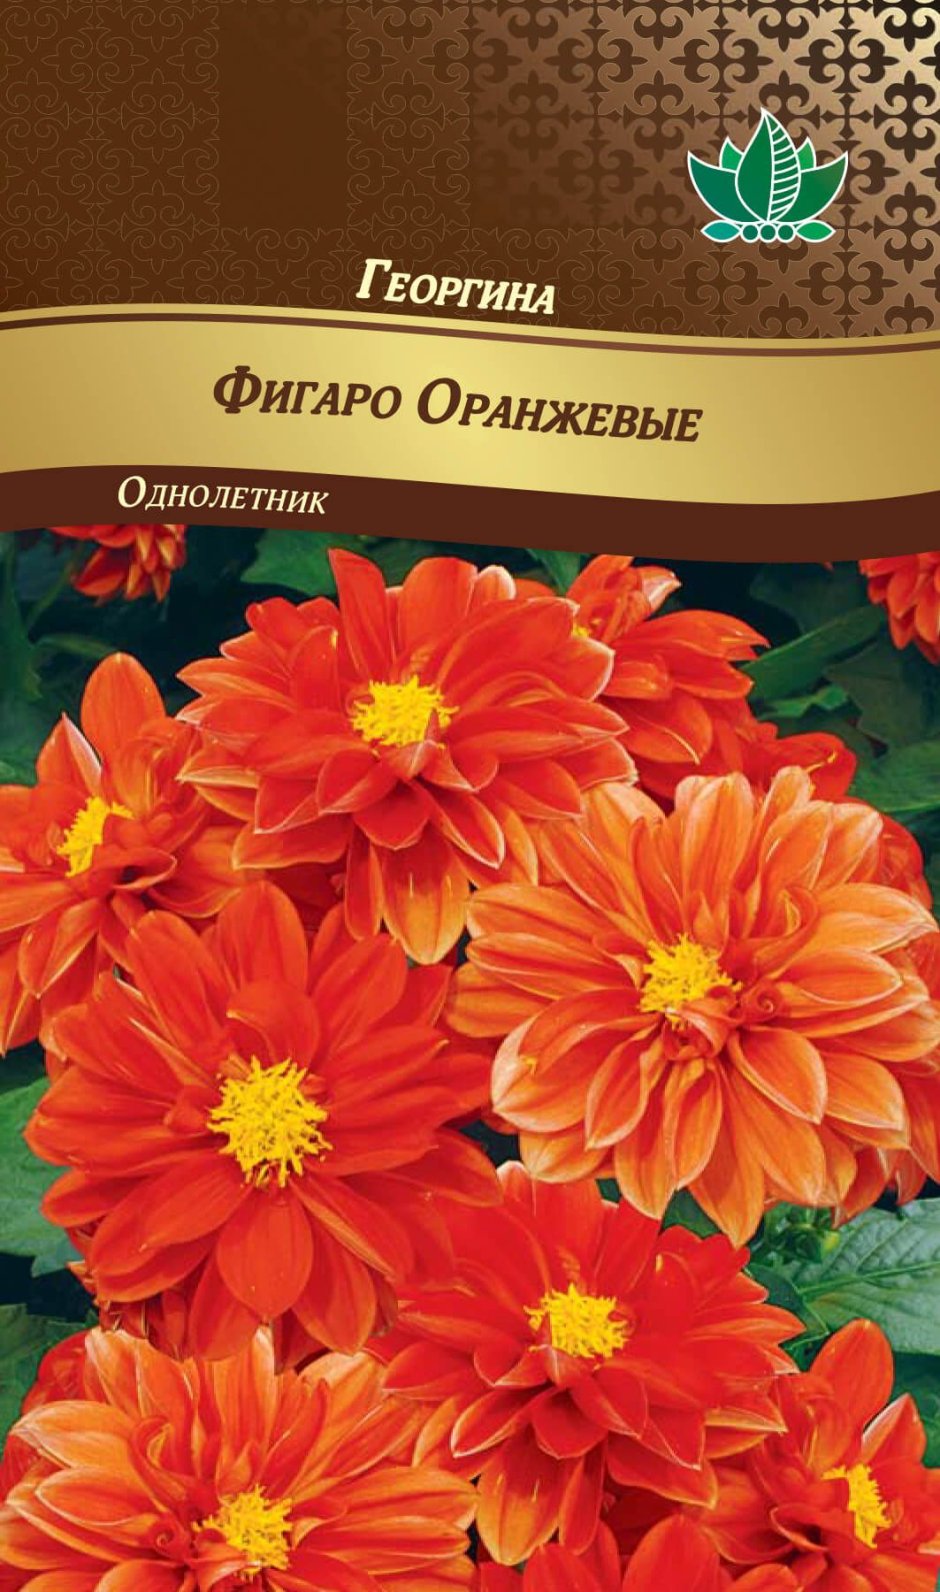 Георгина Фигаро оранжевая